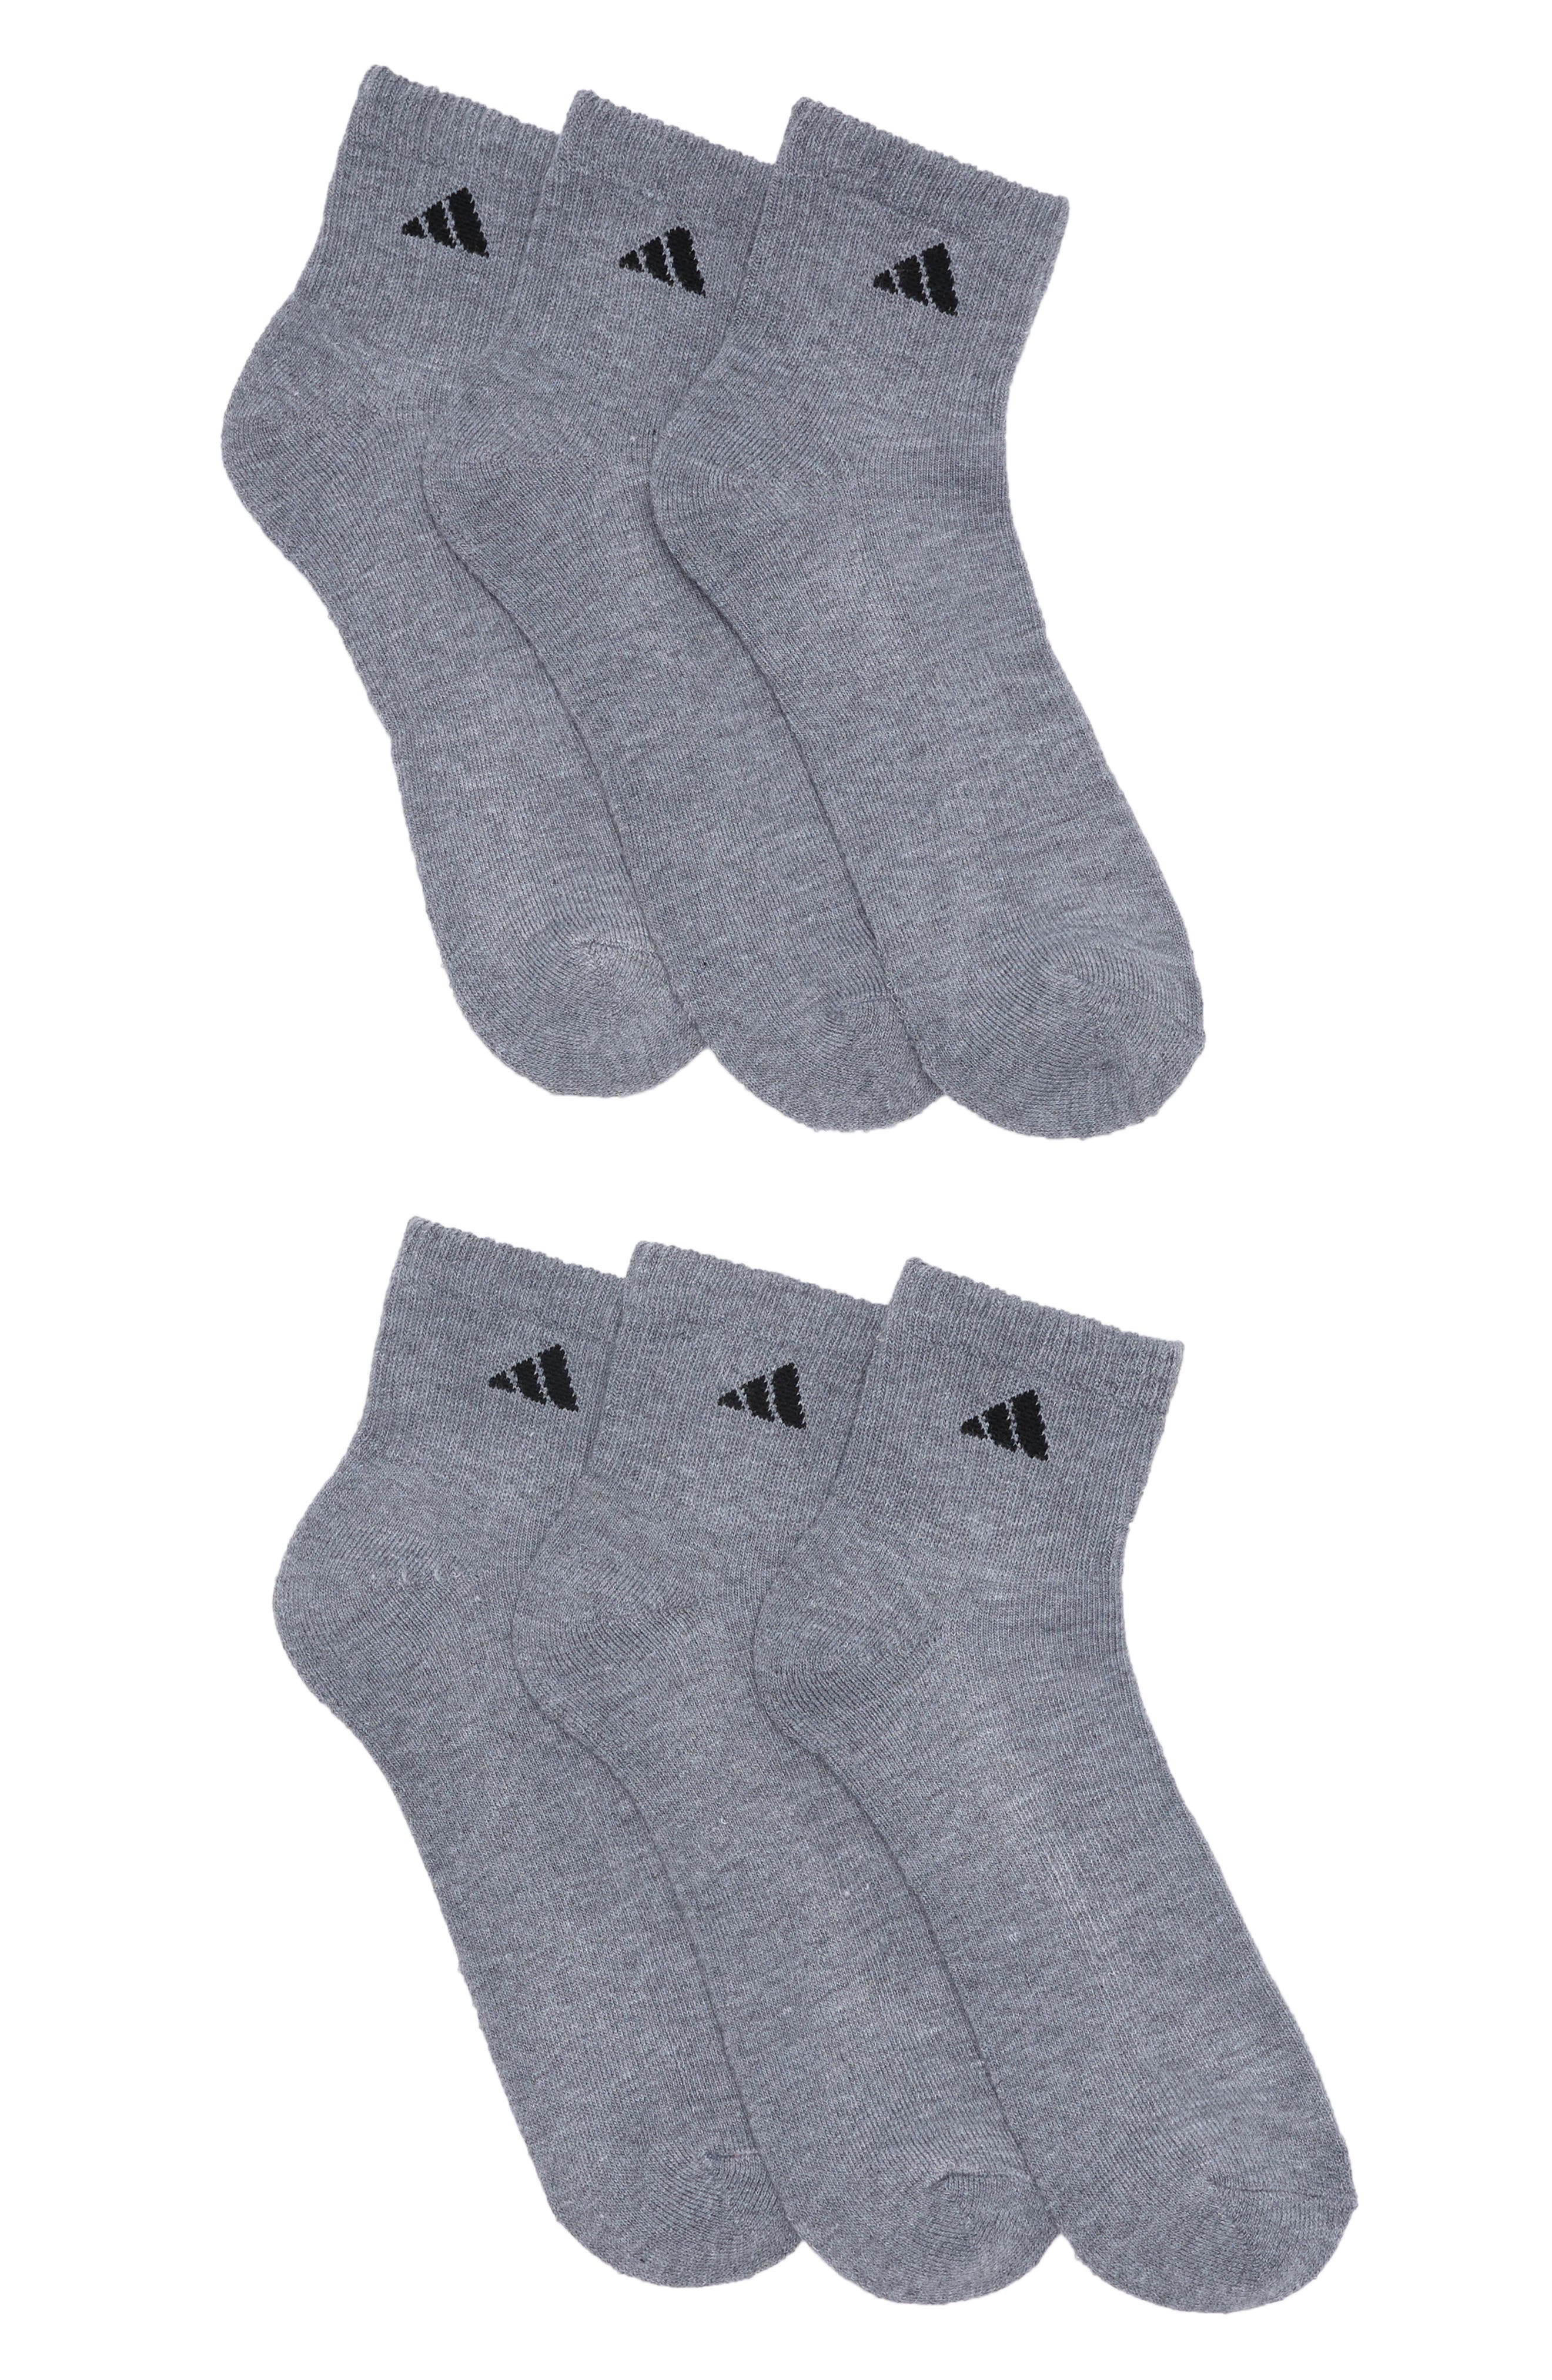 Agron Athletic Crew Socks In Med Grey